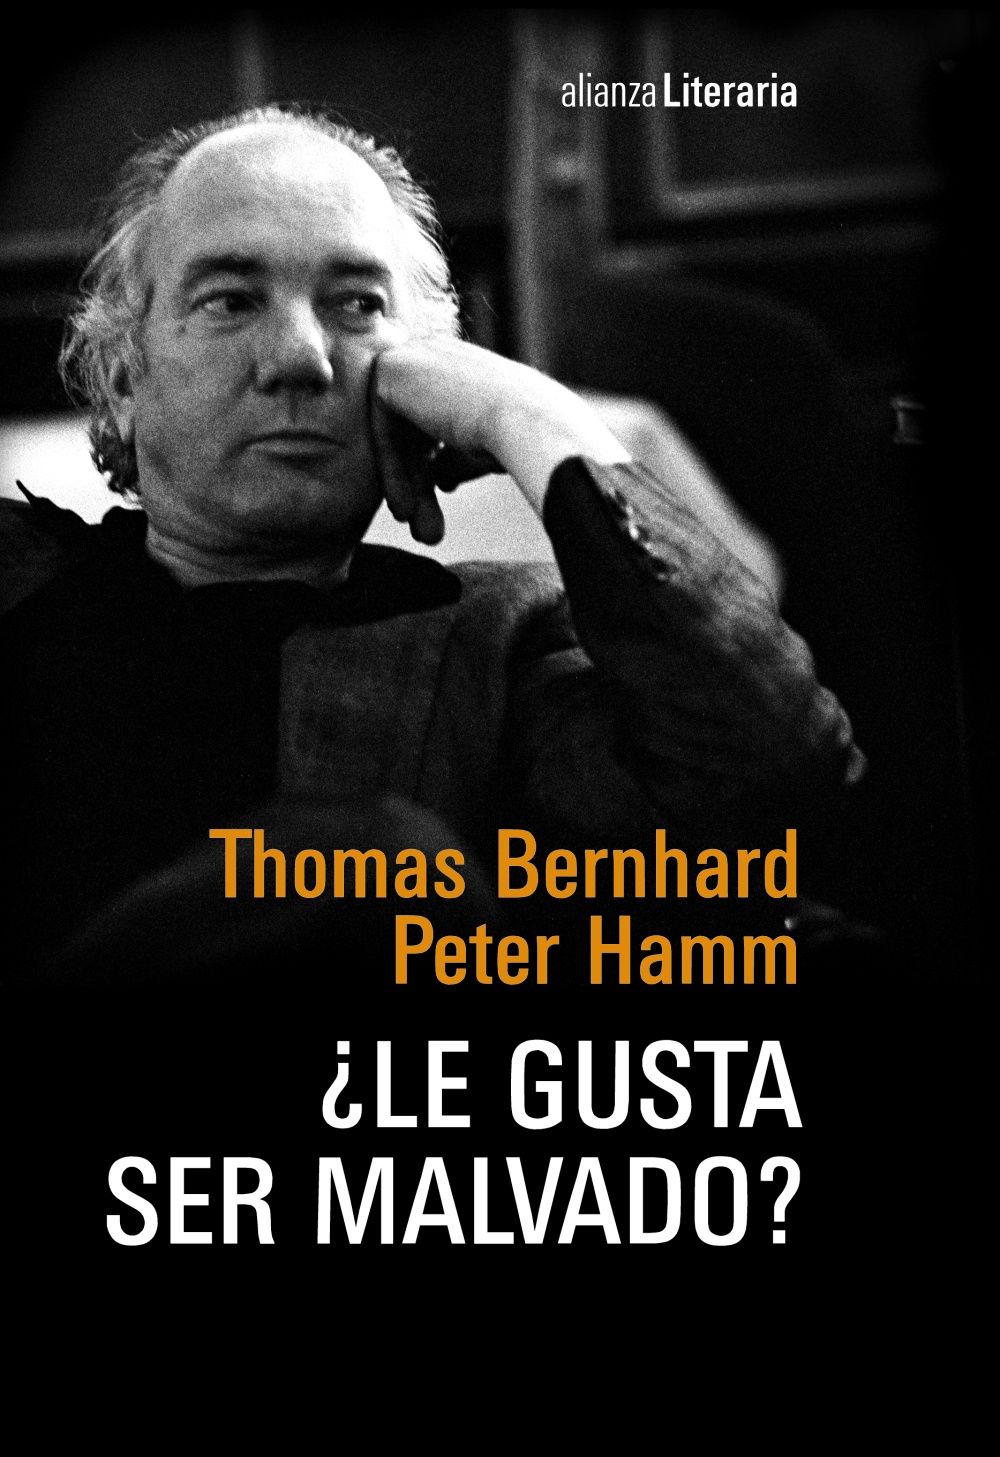 ¿LE GUSTA SER MALVADO?. CONVERSACIÓN NOCTURNA ENTRE THOMAS BERNHARD Y PETER HAMM EN LA CASA DE BERNHARD